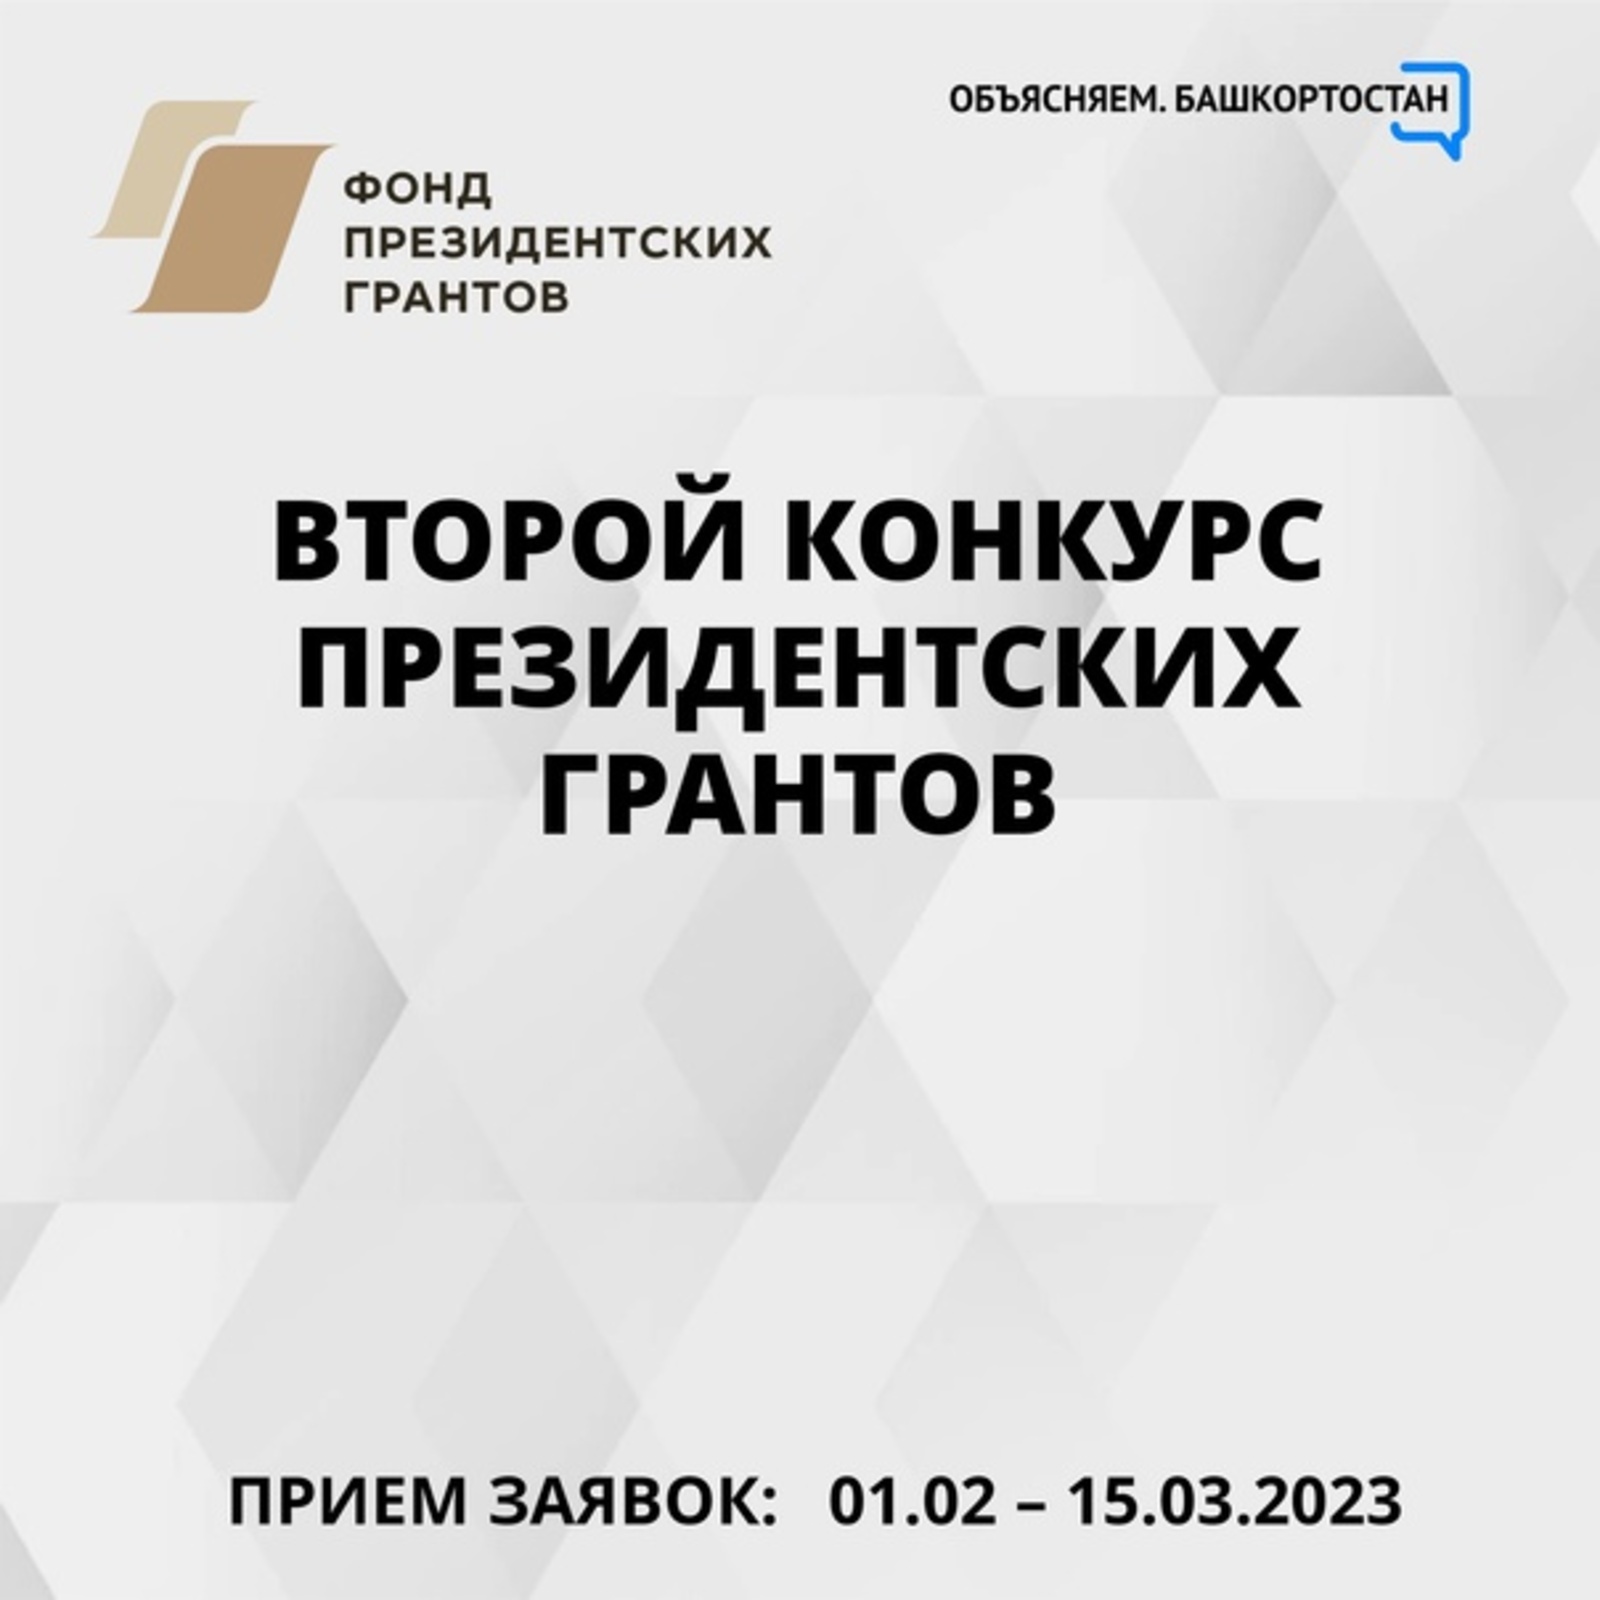 В Башкирии НКО приглашаются к второму конкурсу президентских грантов 2023 года – прием заявок начнется 1 февраля